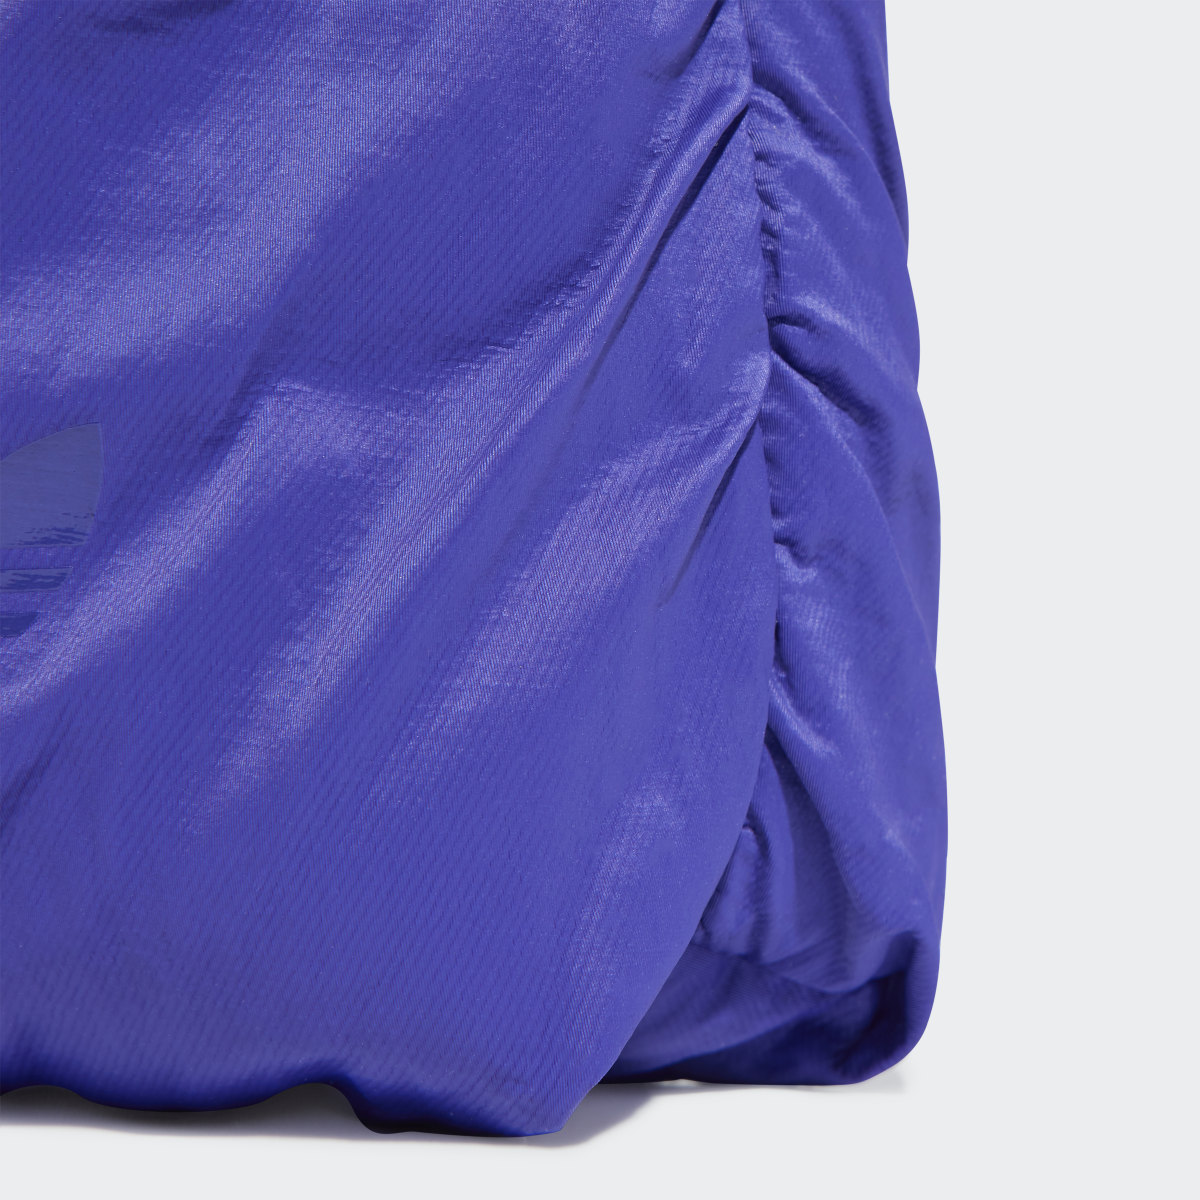 Adidas Satin Small Shoulder Bag. 7